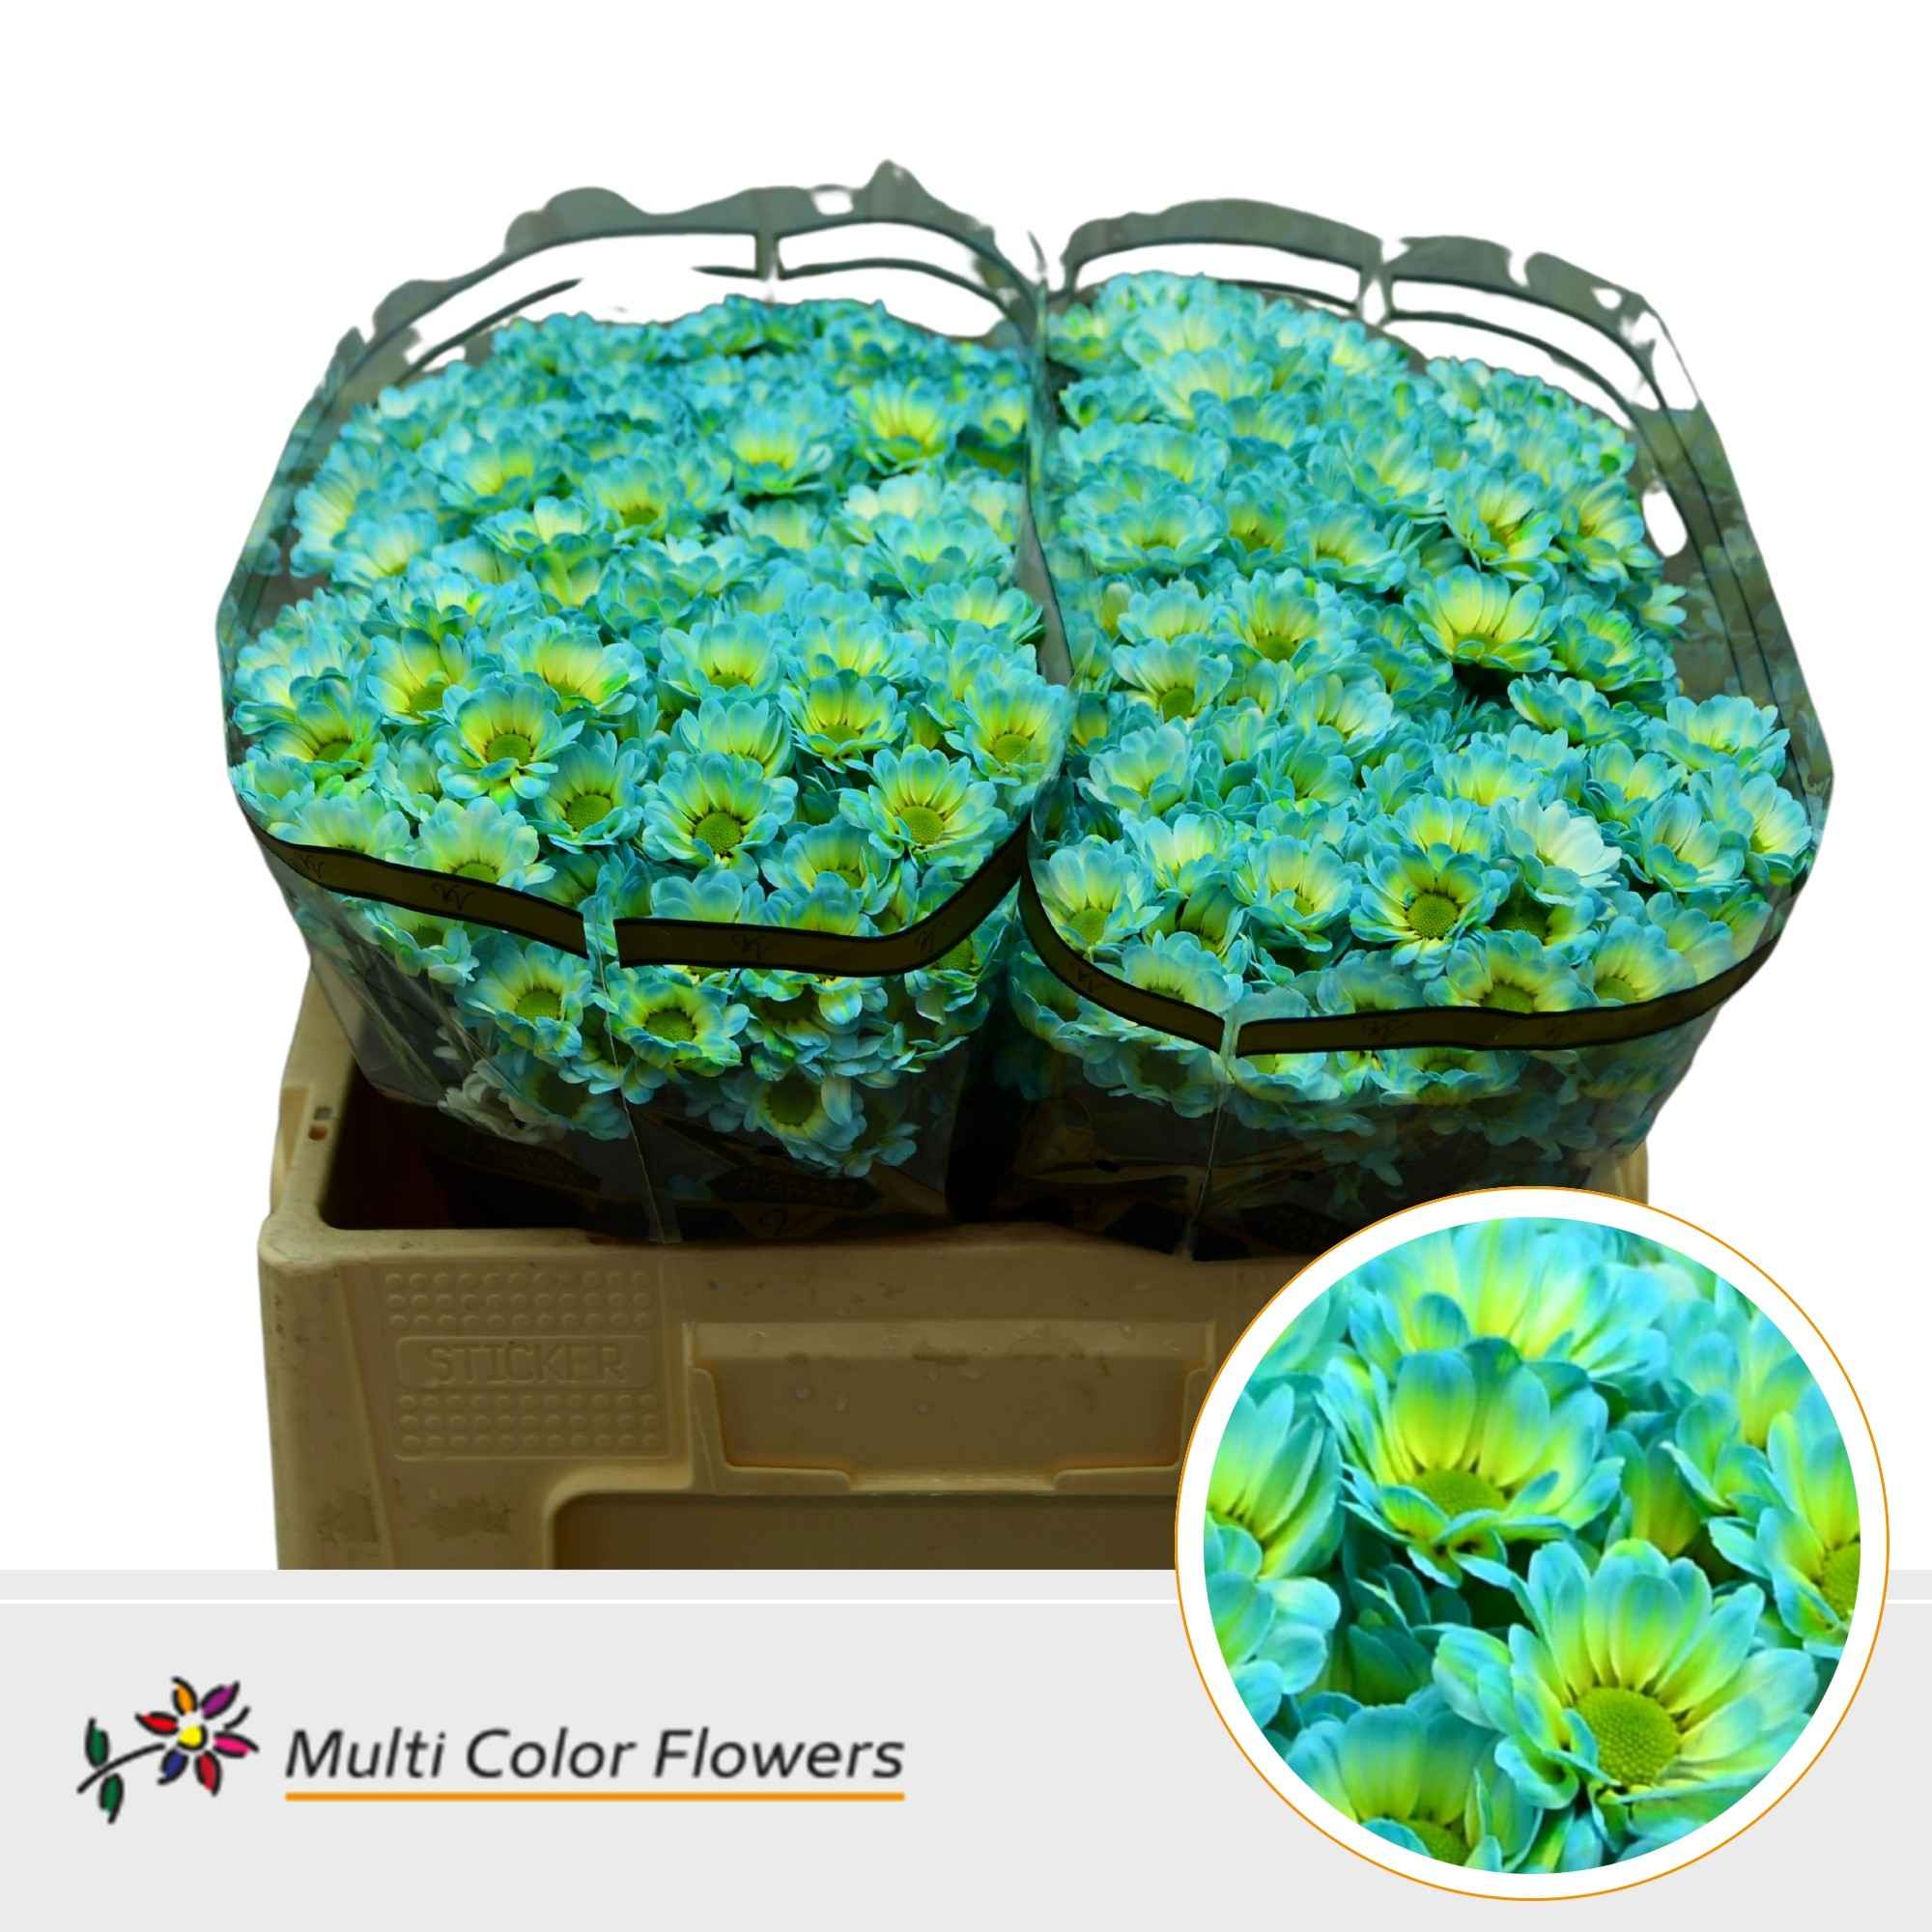 Срезанные цветы оптом Chrys sa paint bowie bubblegum от 50шт из Голландии с доставкой по России